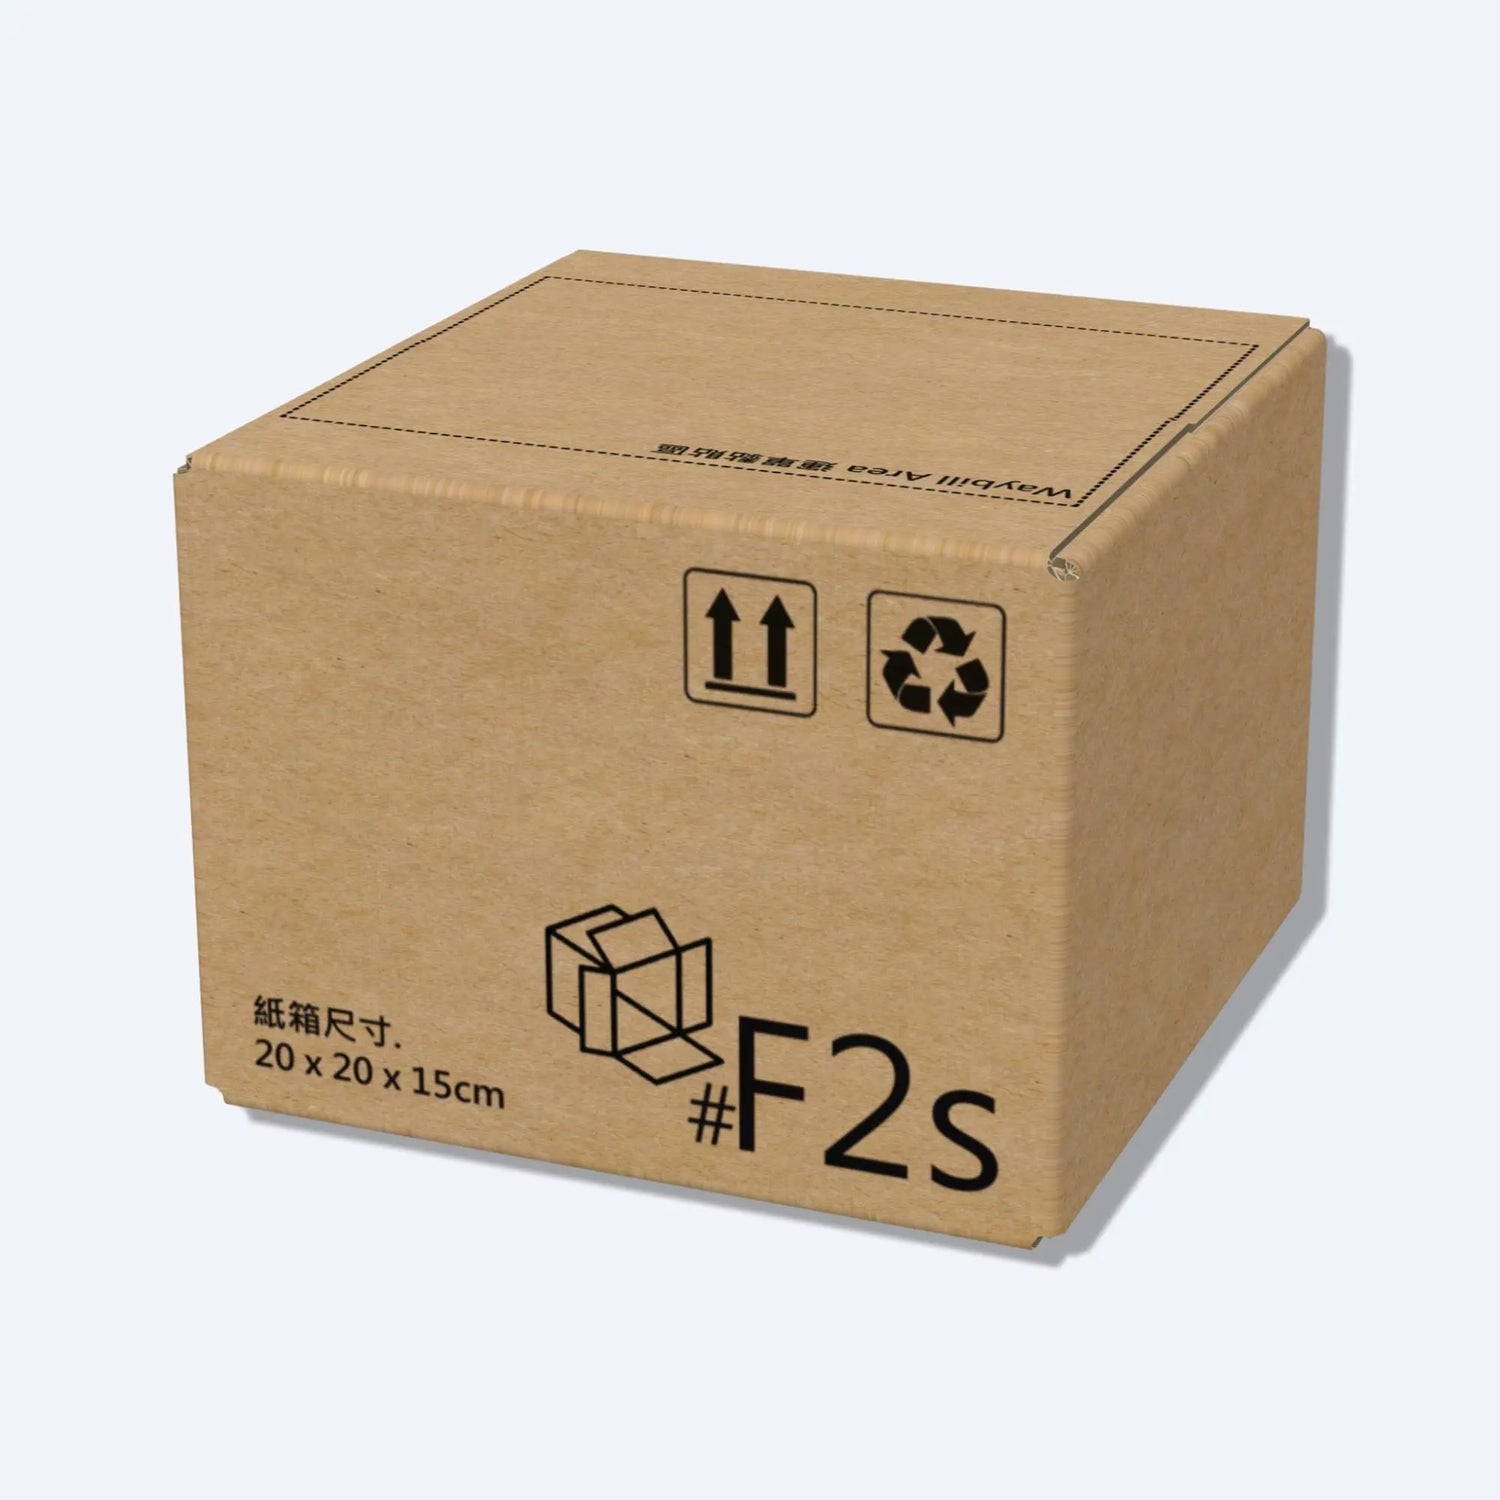 小型的順豐F2s紙箱側面圖，印有20x20x15cm的尺寸。